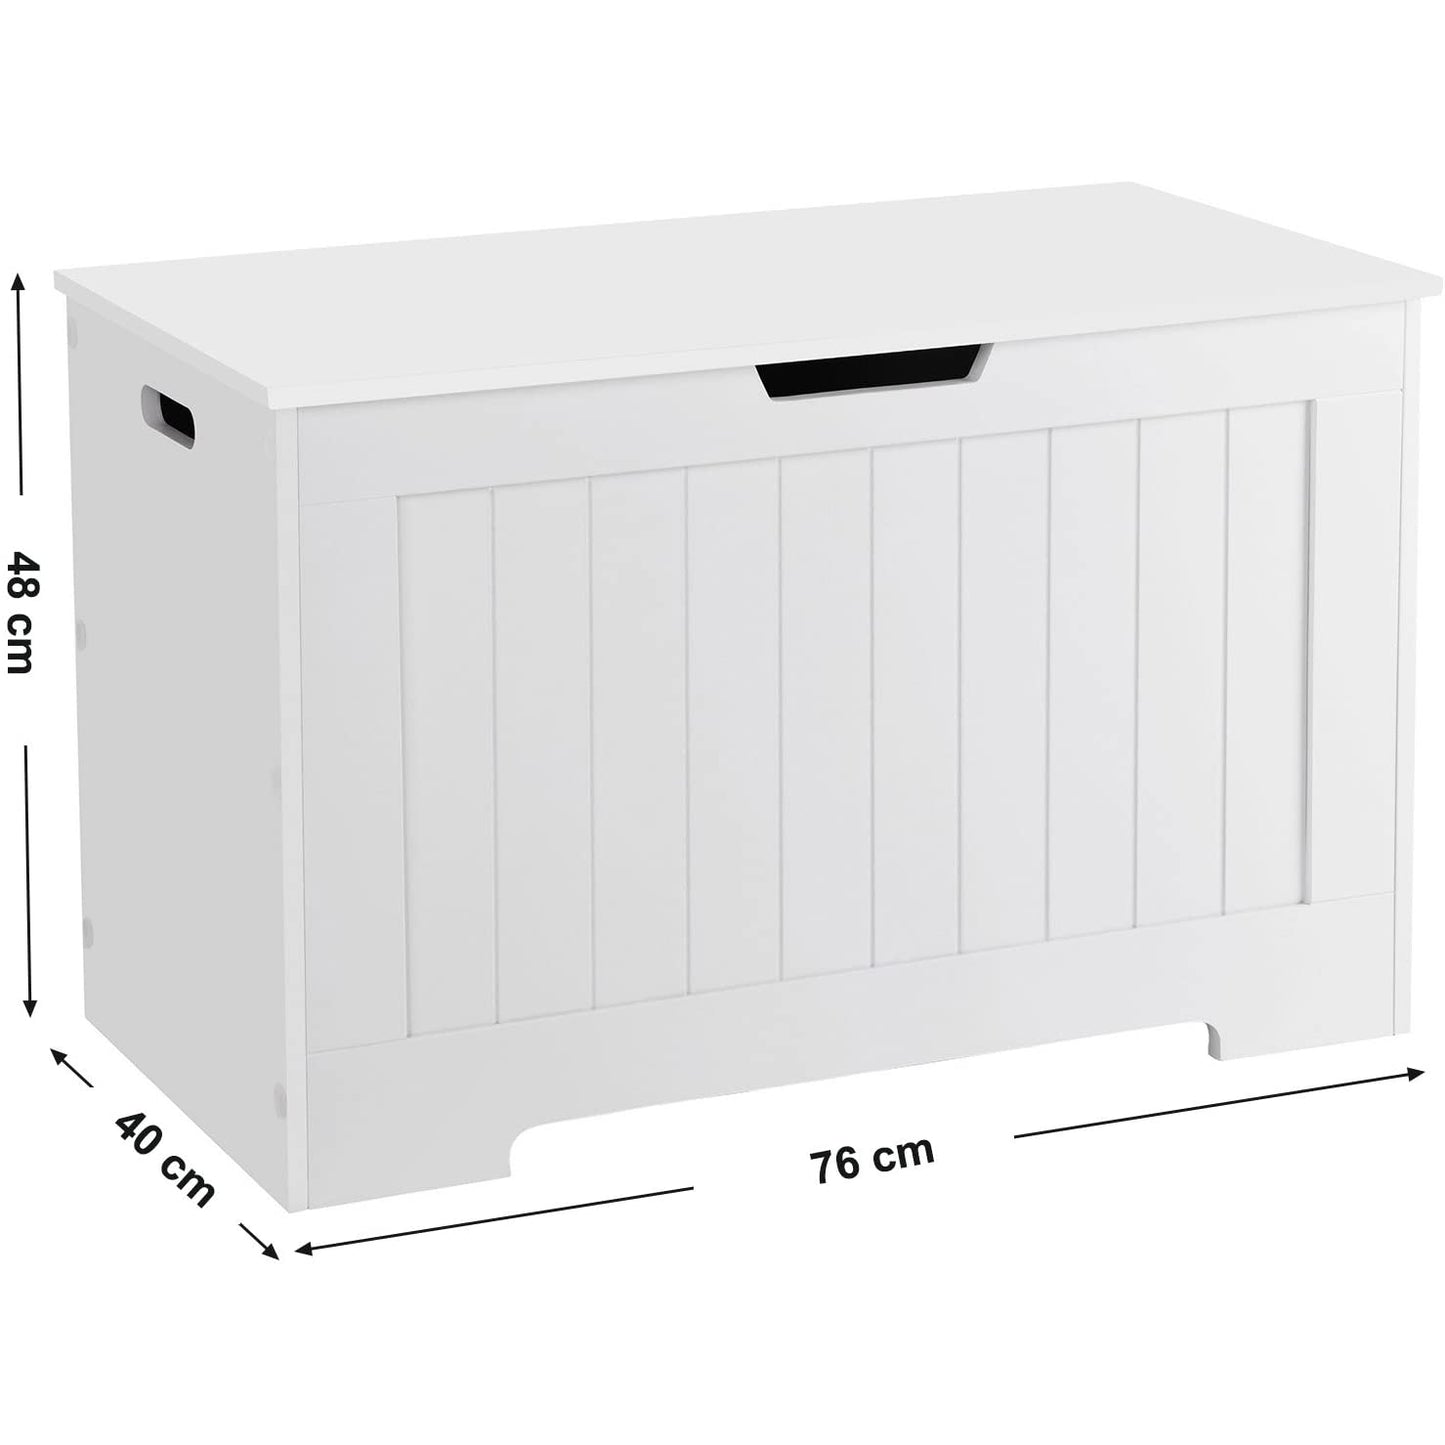 Nancy's Bath Storage chest - Storage - Storage bench - Toy box - Storage box